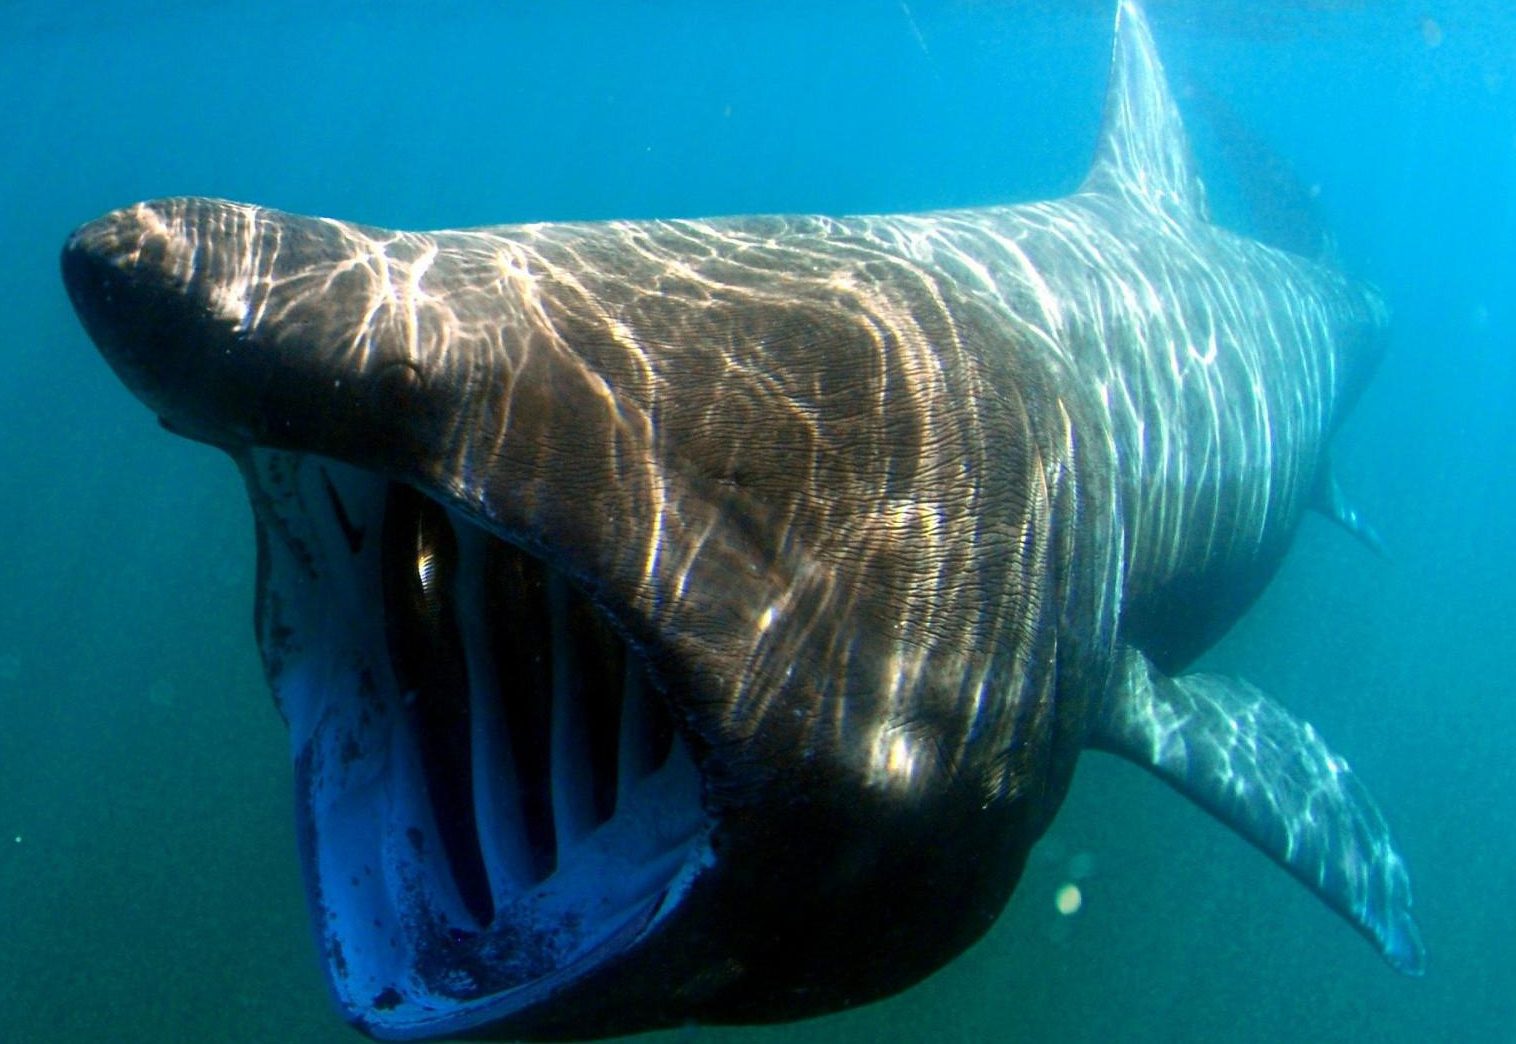 basking sharks